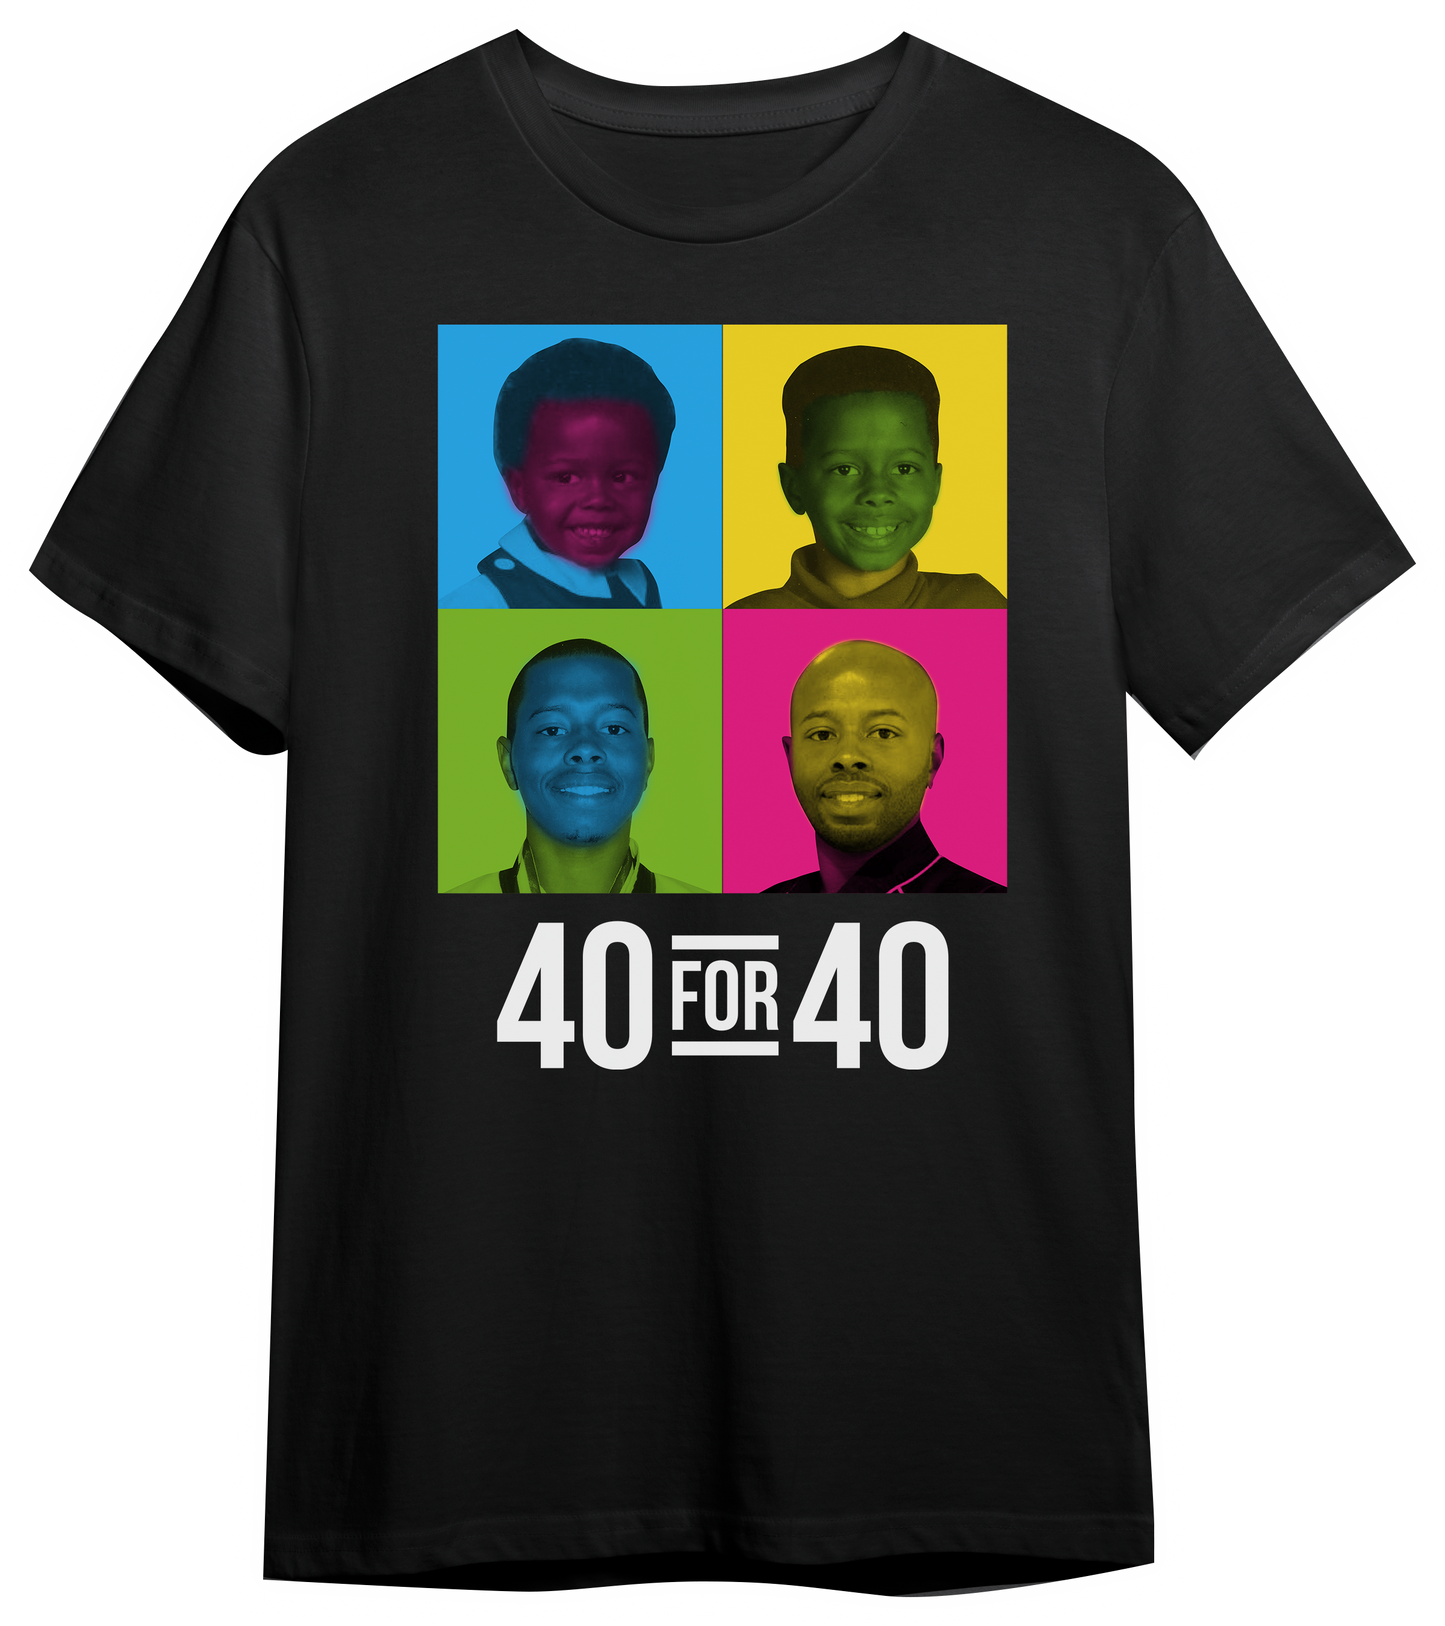 Master Jordan's 40 for 40 T-shirt